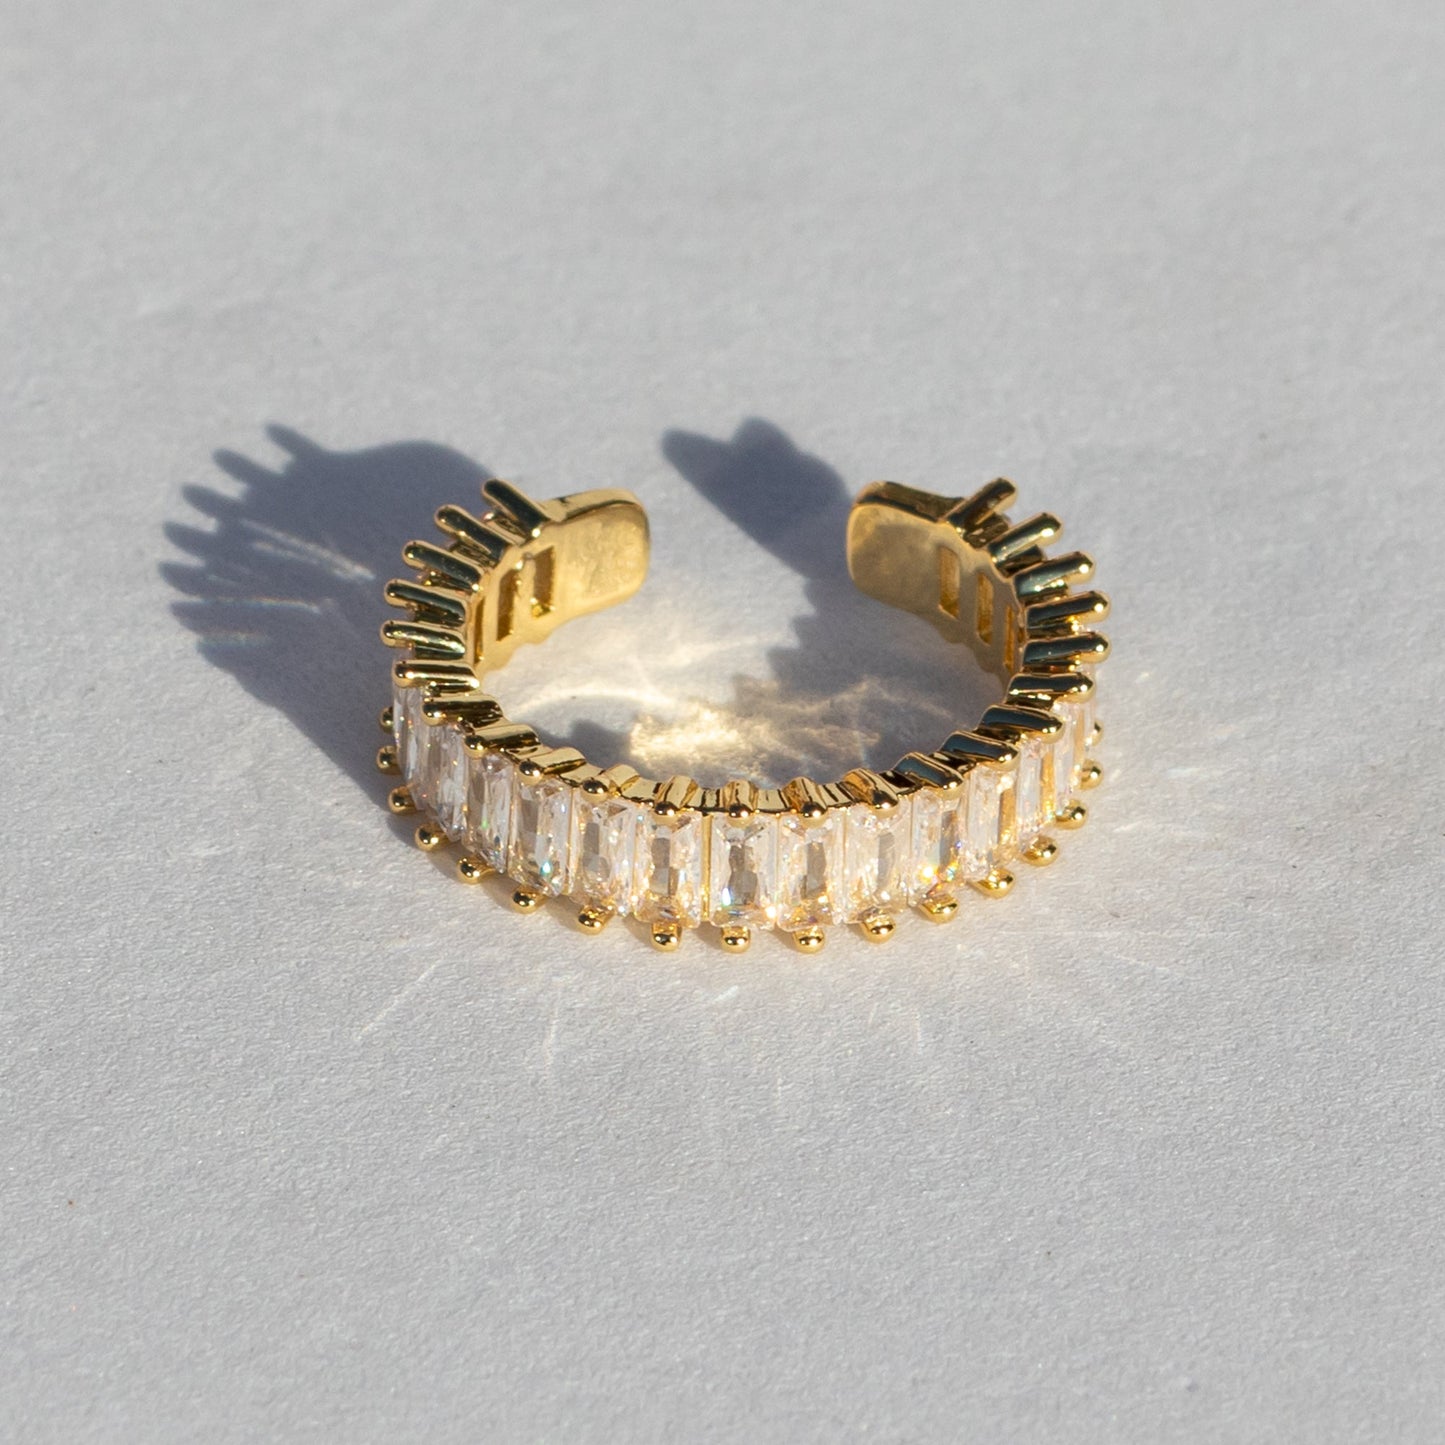 18k vergoldeter Ring Amira Verstellbar - NONOSH